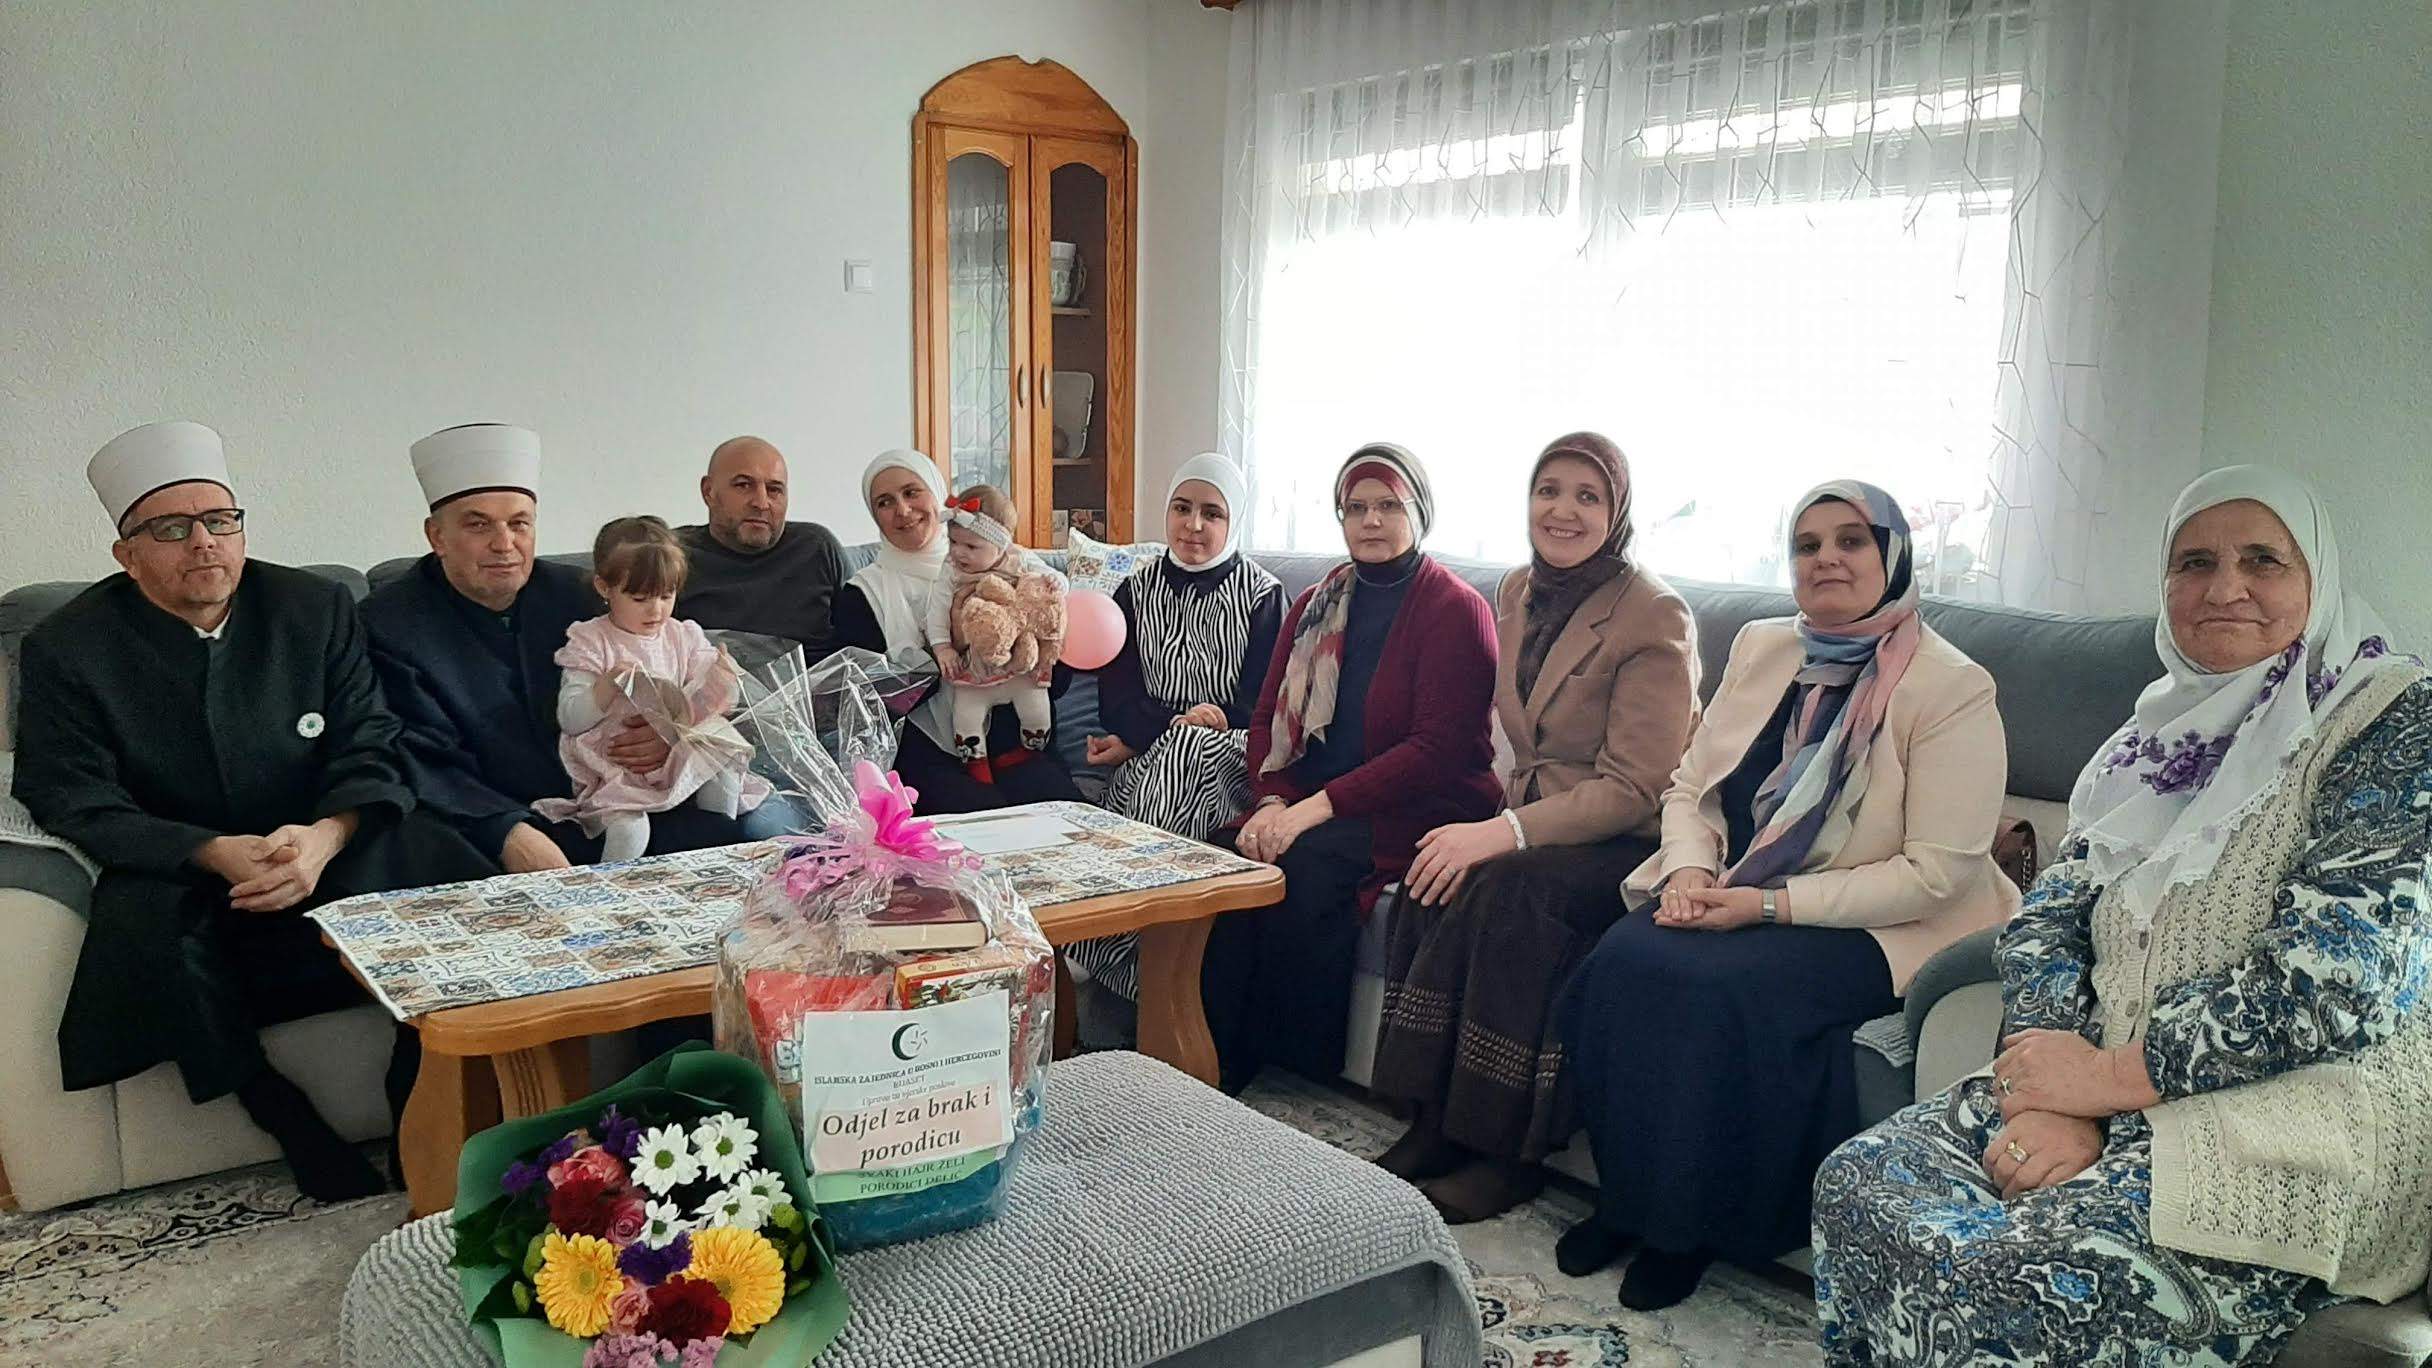 Reisul-ulema darovao tri porodice na području Muftijstva zeničkog – dvije na području MIZ Žepče – džemat Biljevina